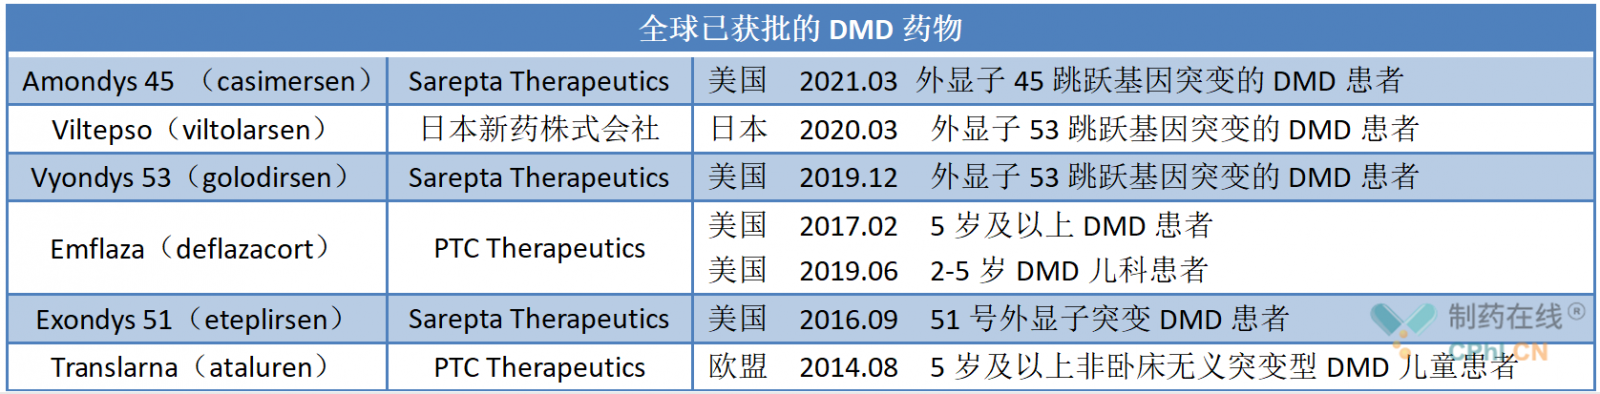 全球已获批的DMD药物